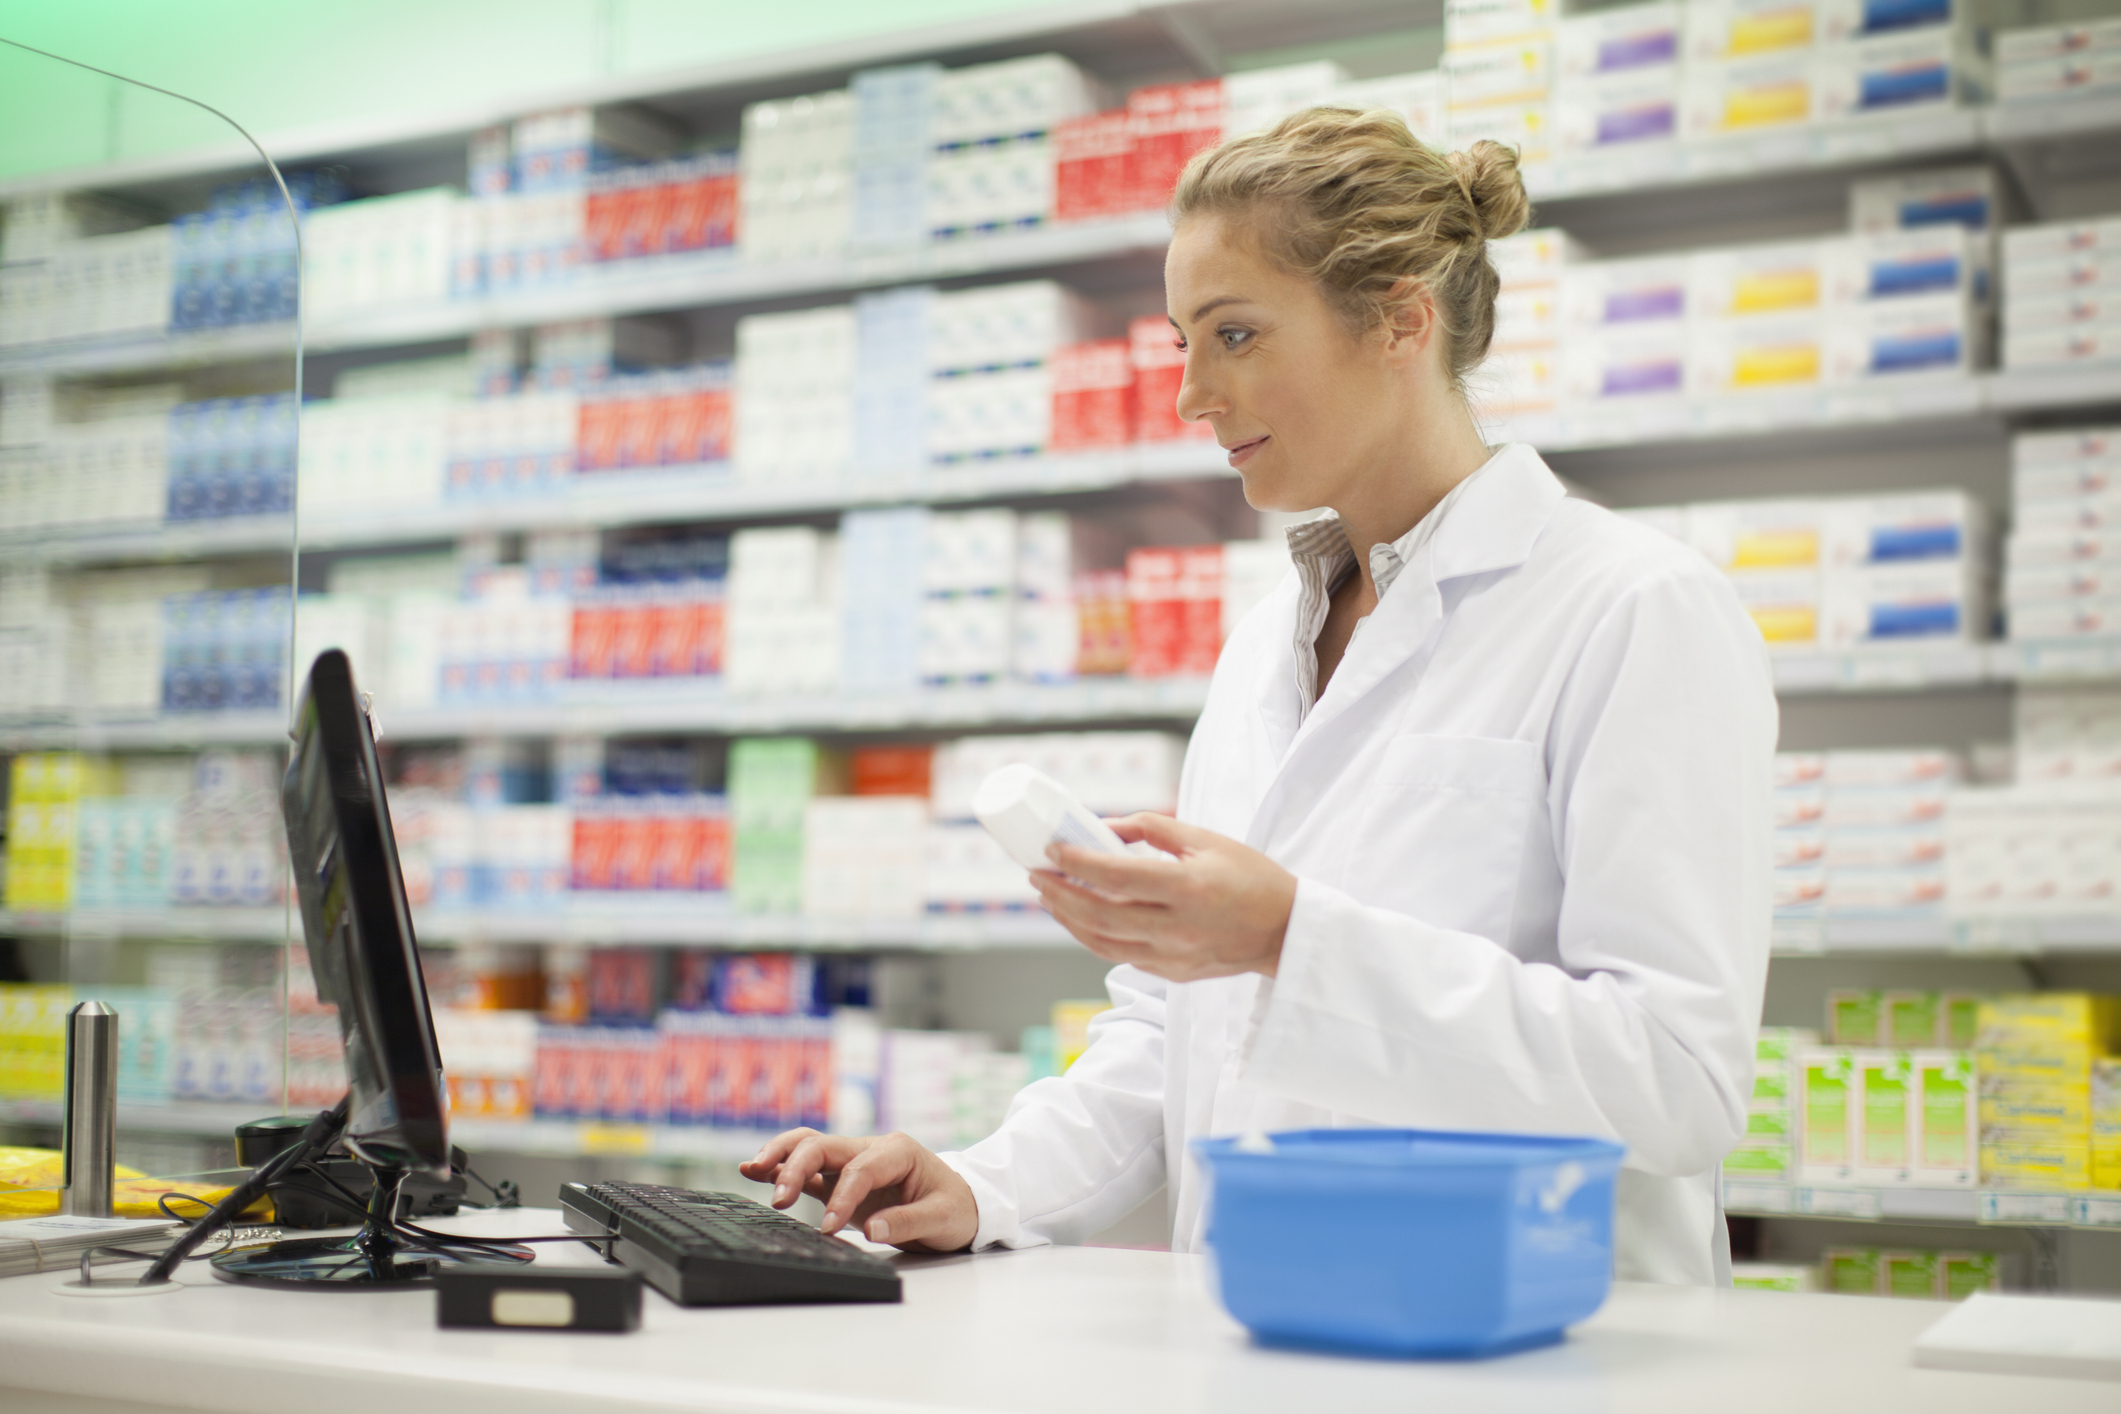 Pharmacy Brands Canada étendra le service PrescripTIon à ses membres dans l’Ouest canadien